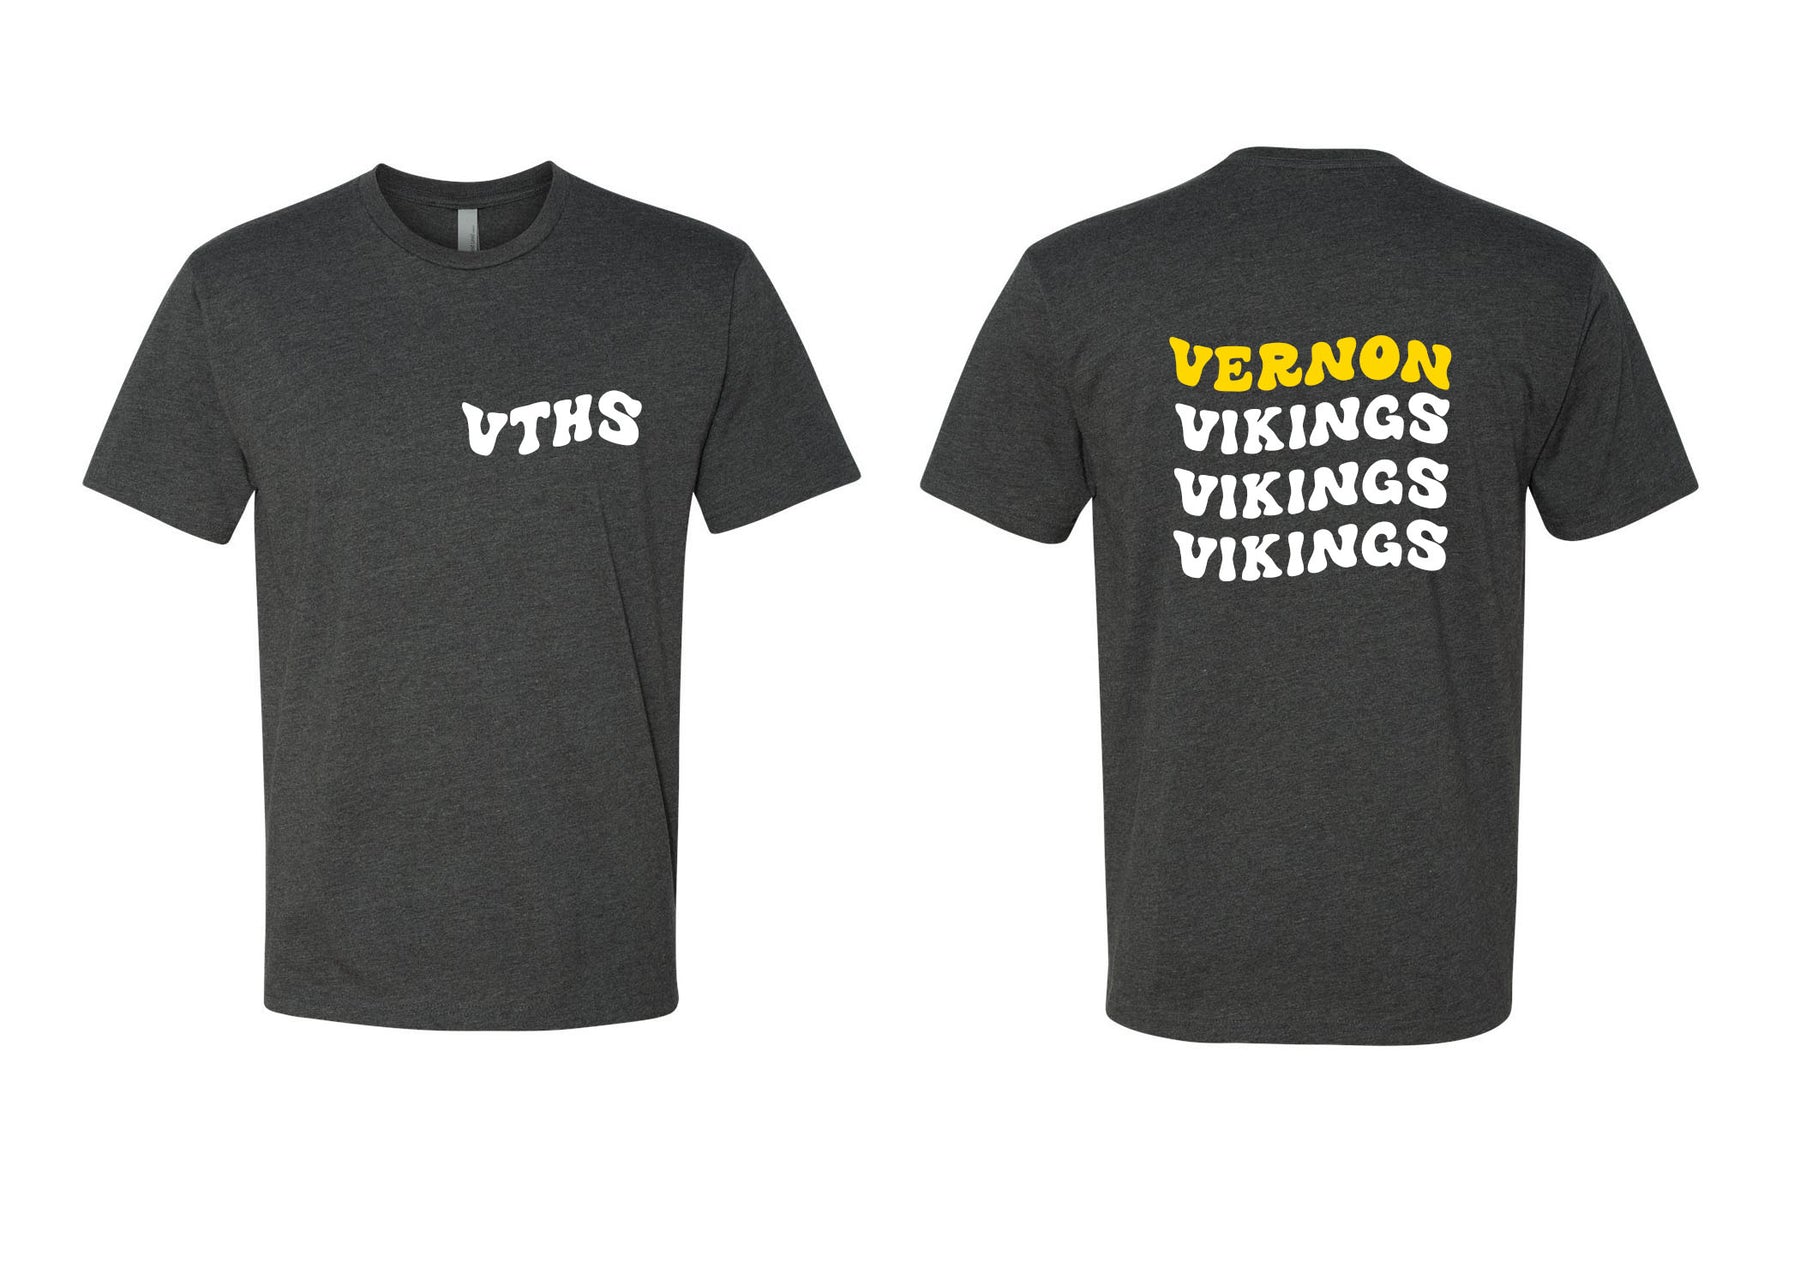 VTHS design 1 T-Shirt